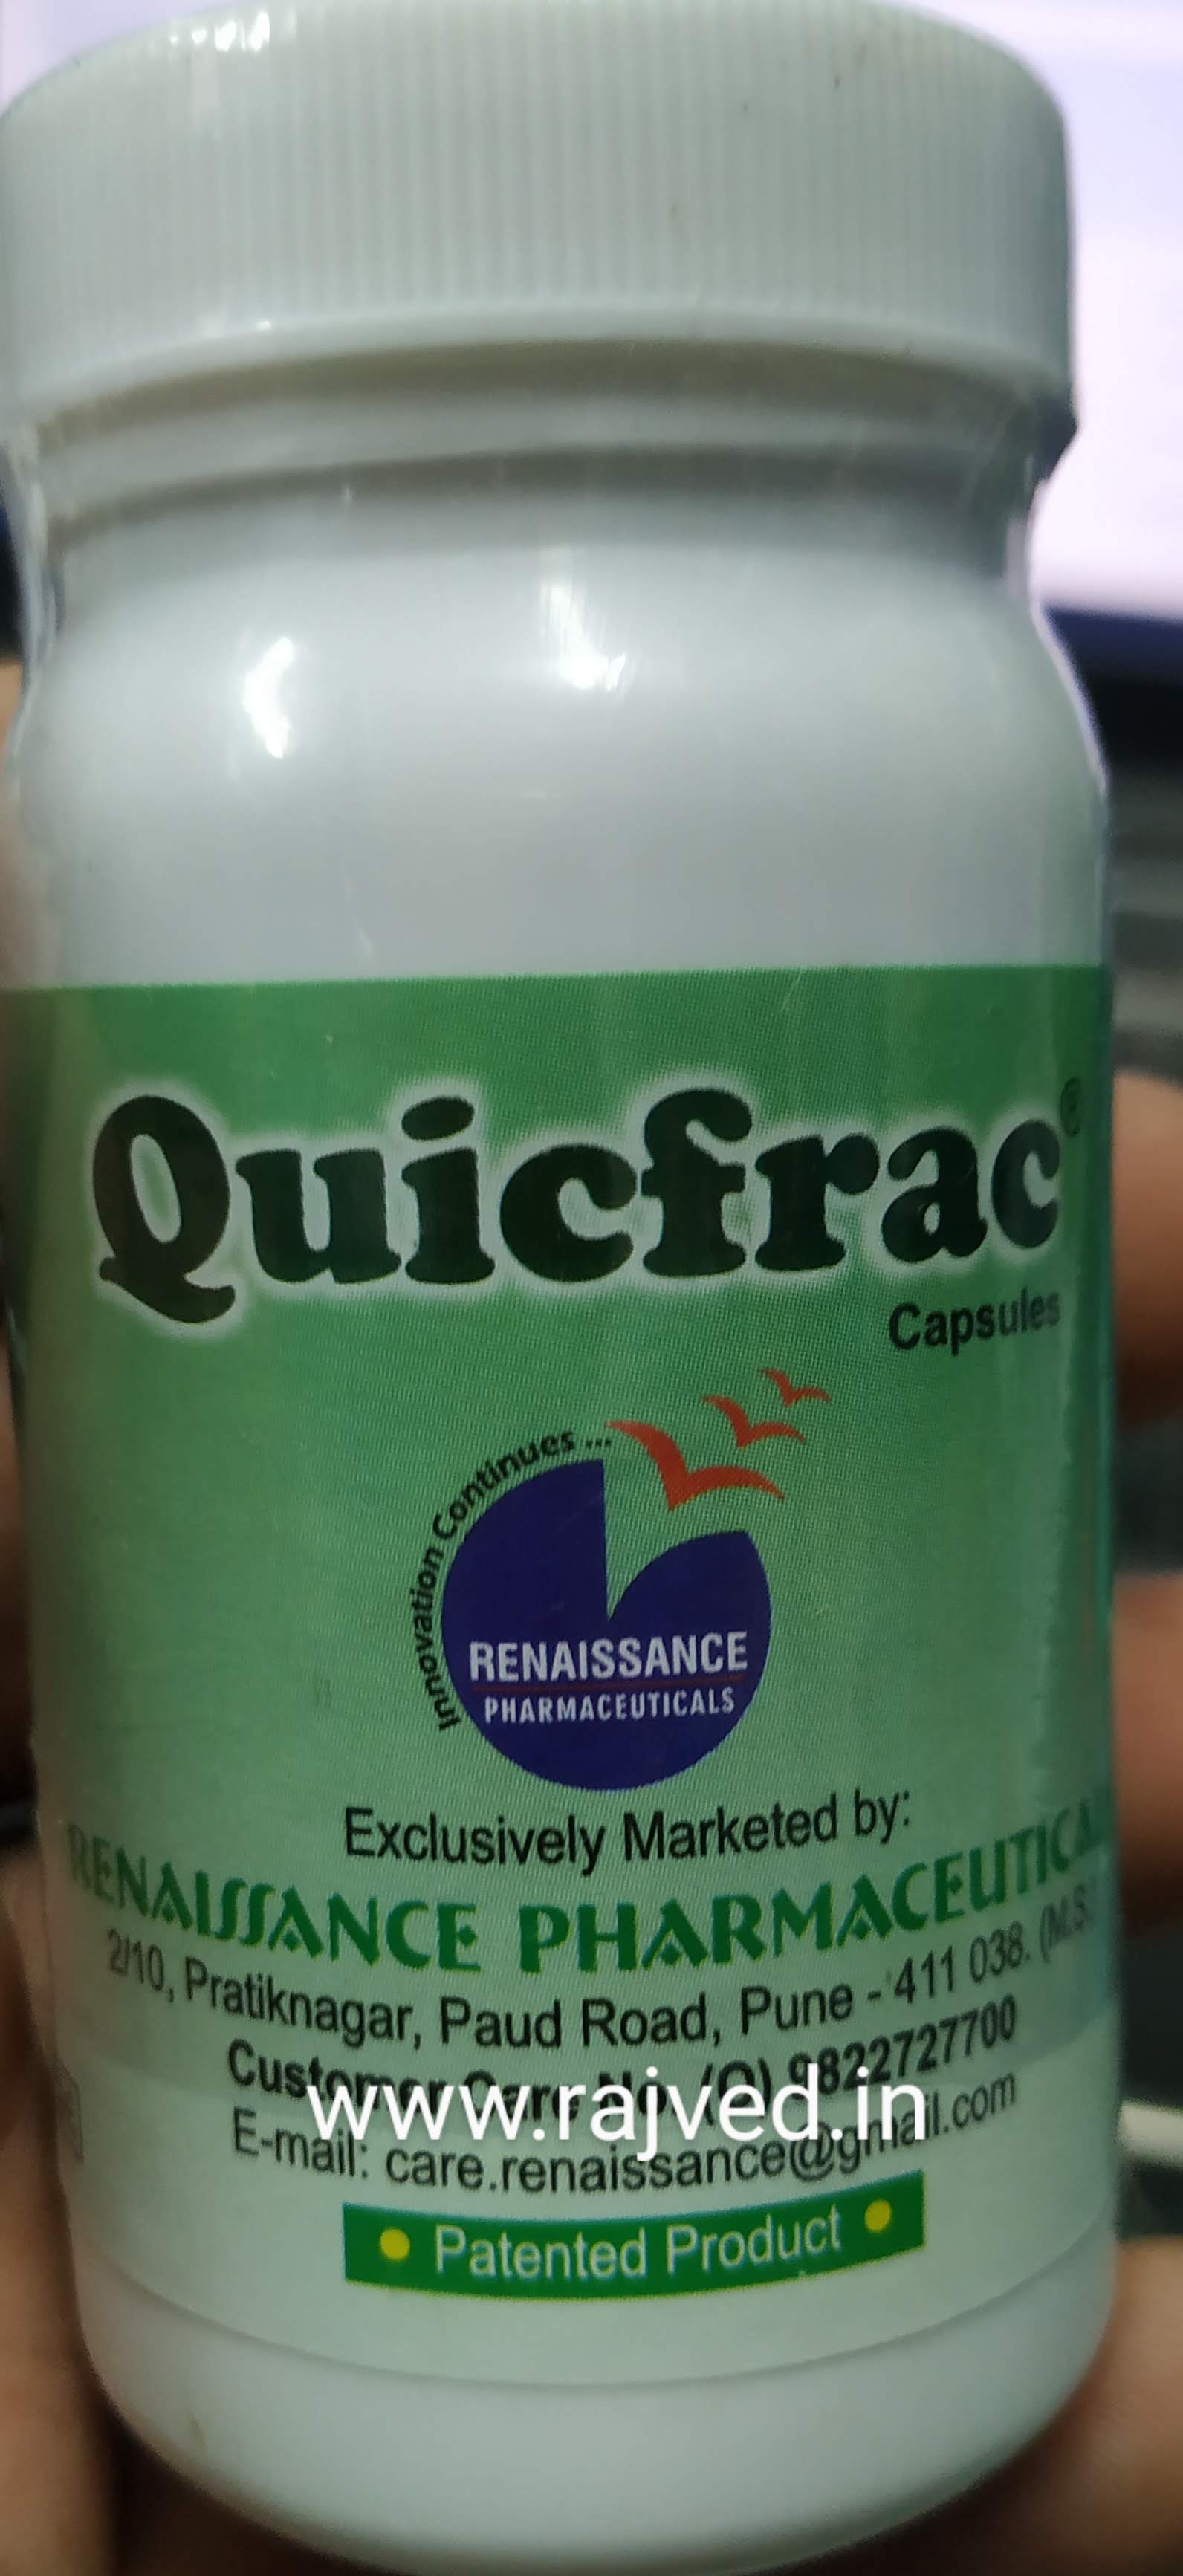 quicfrac cap 30 capsule upto 10% off Renaissance Pharmaceuticals